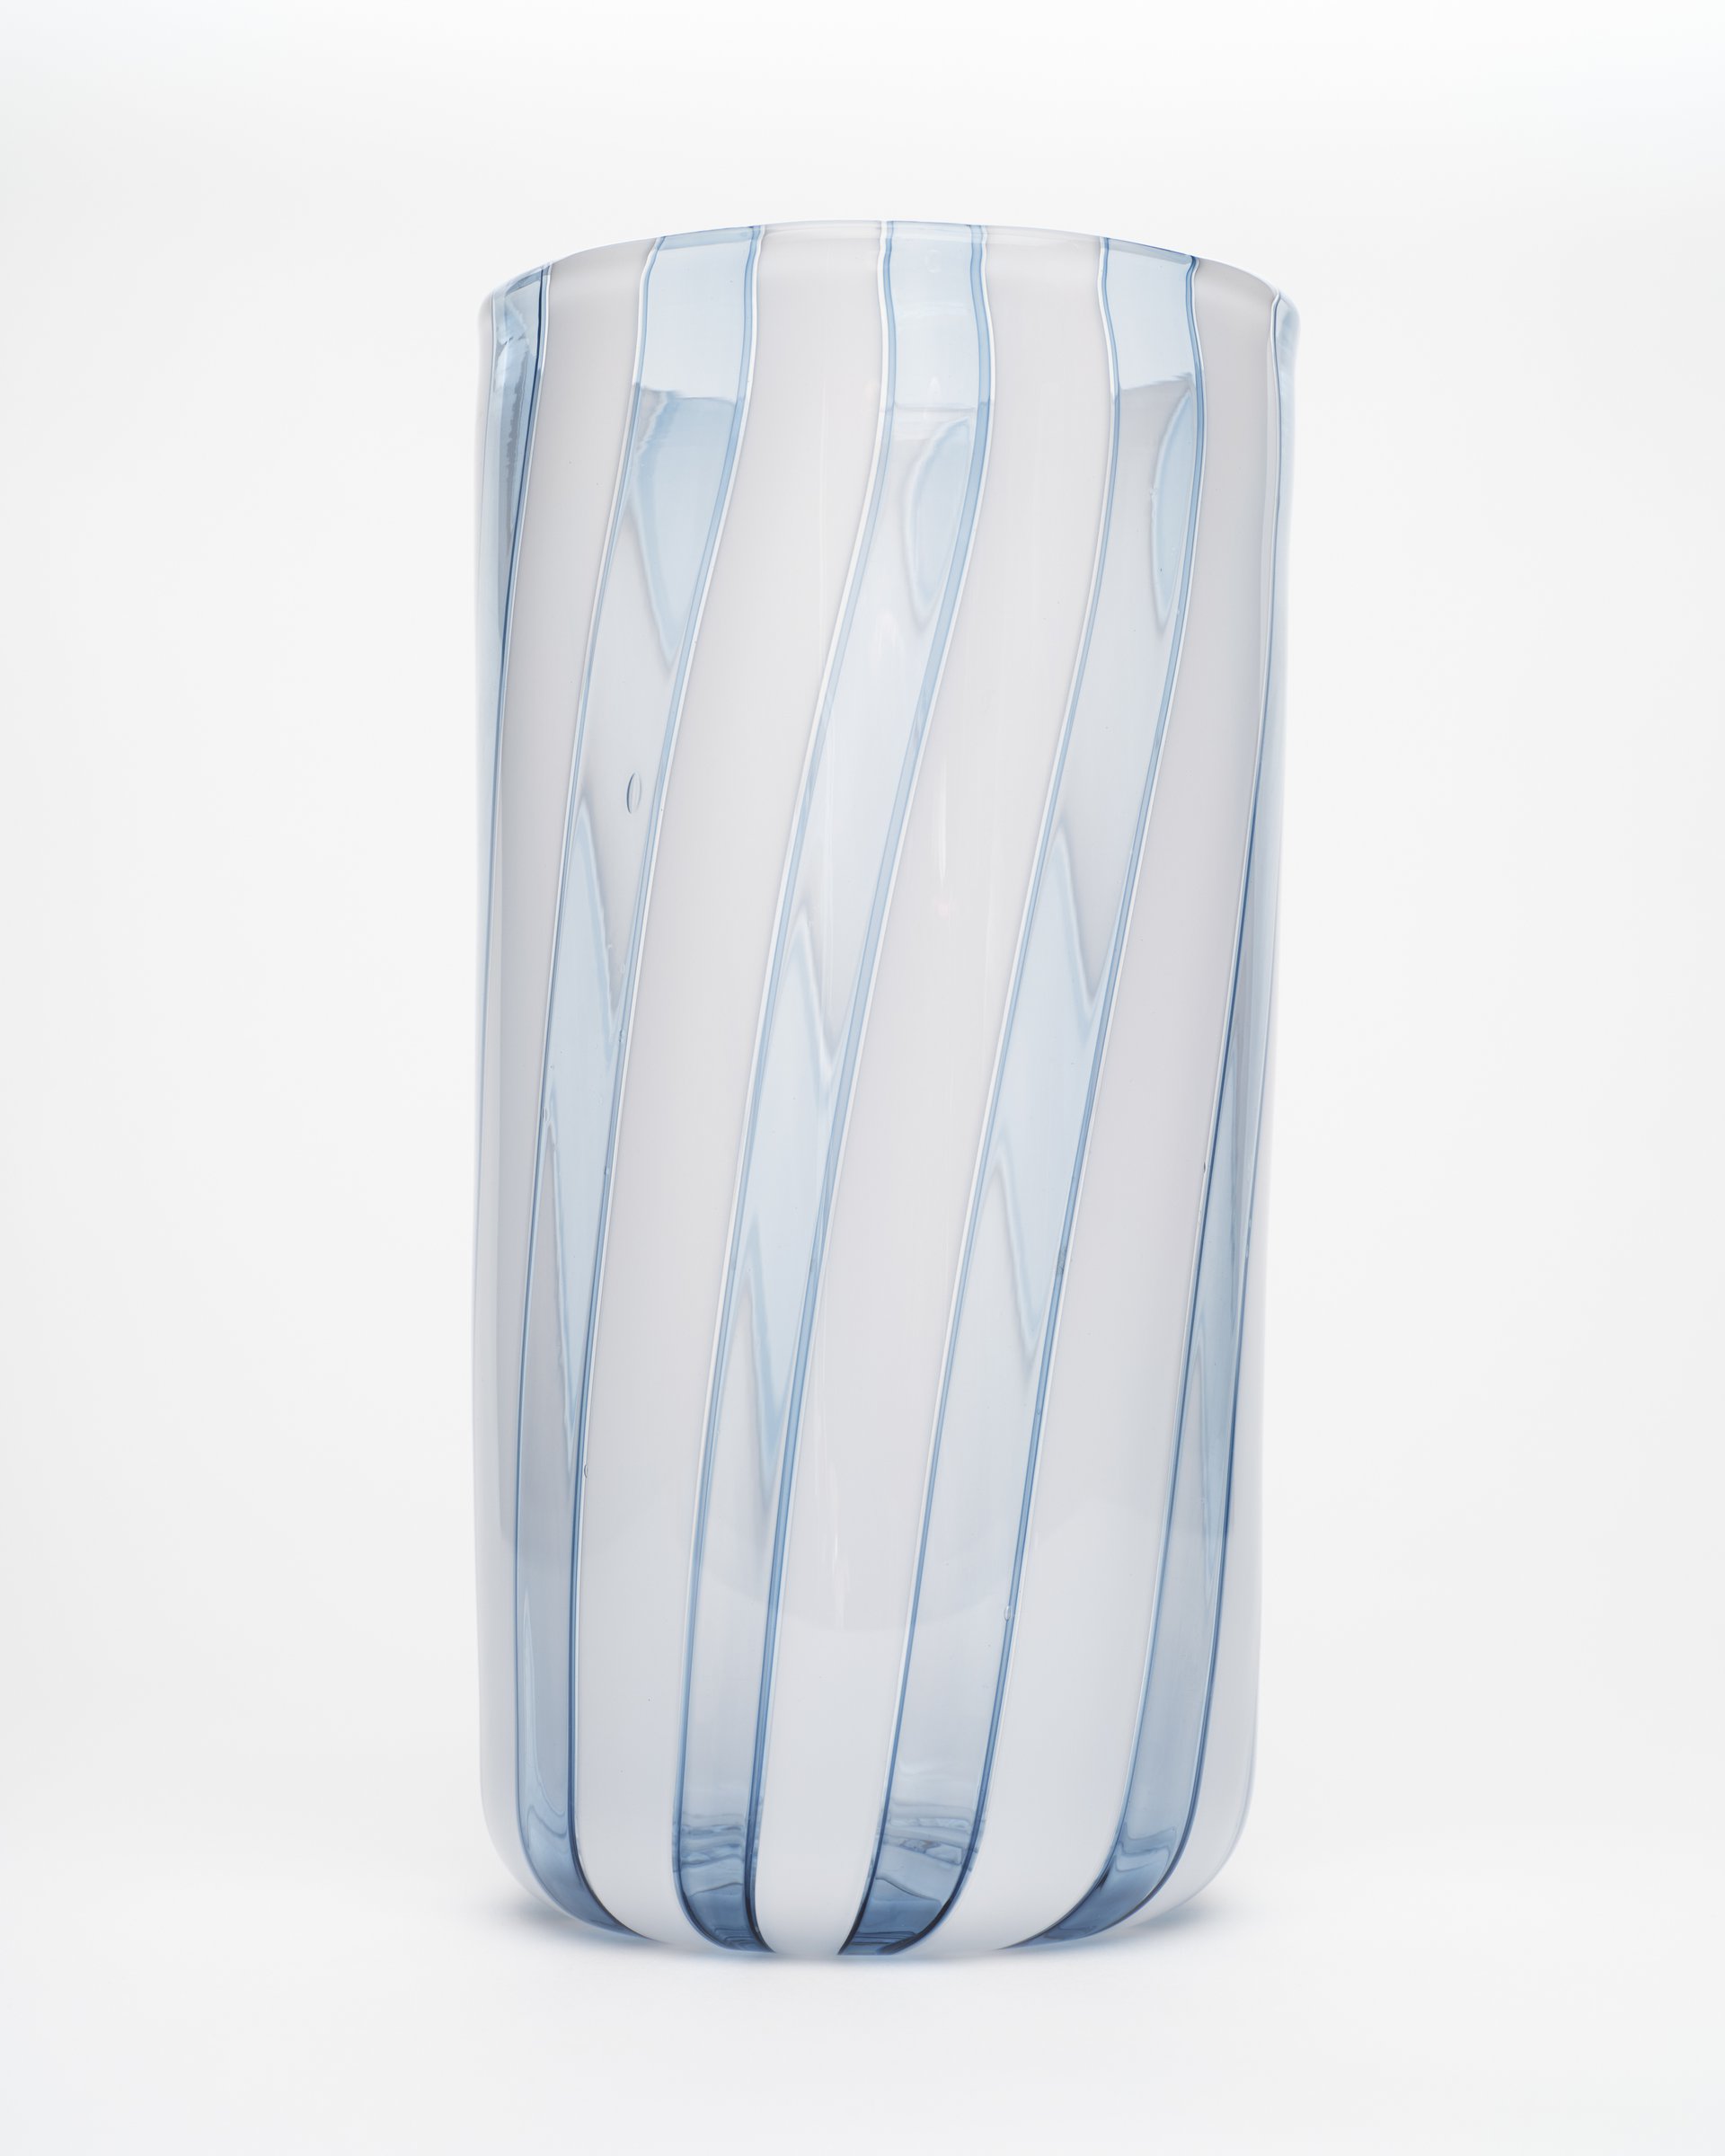 Tall Ice Vase 1